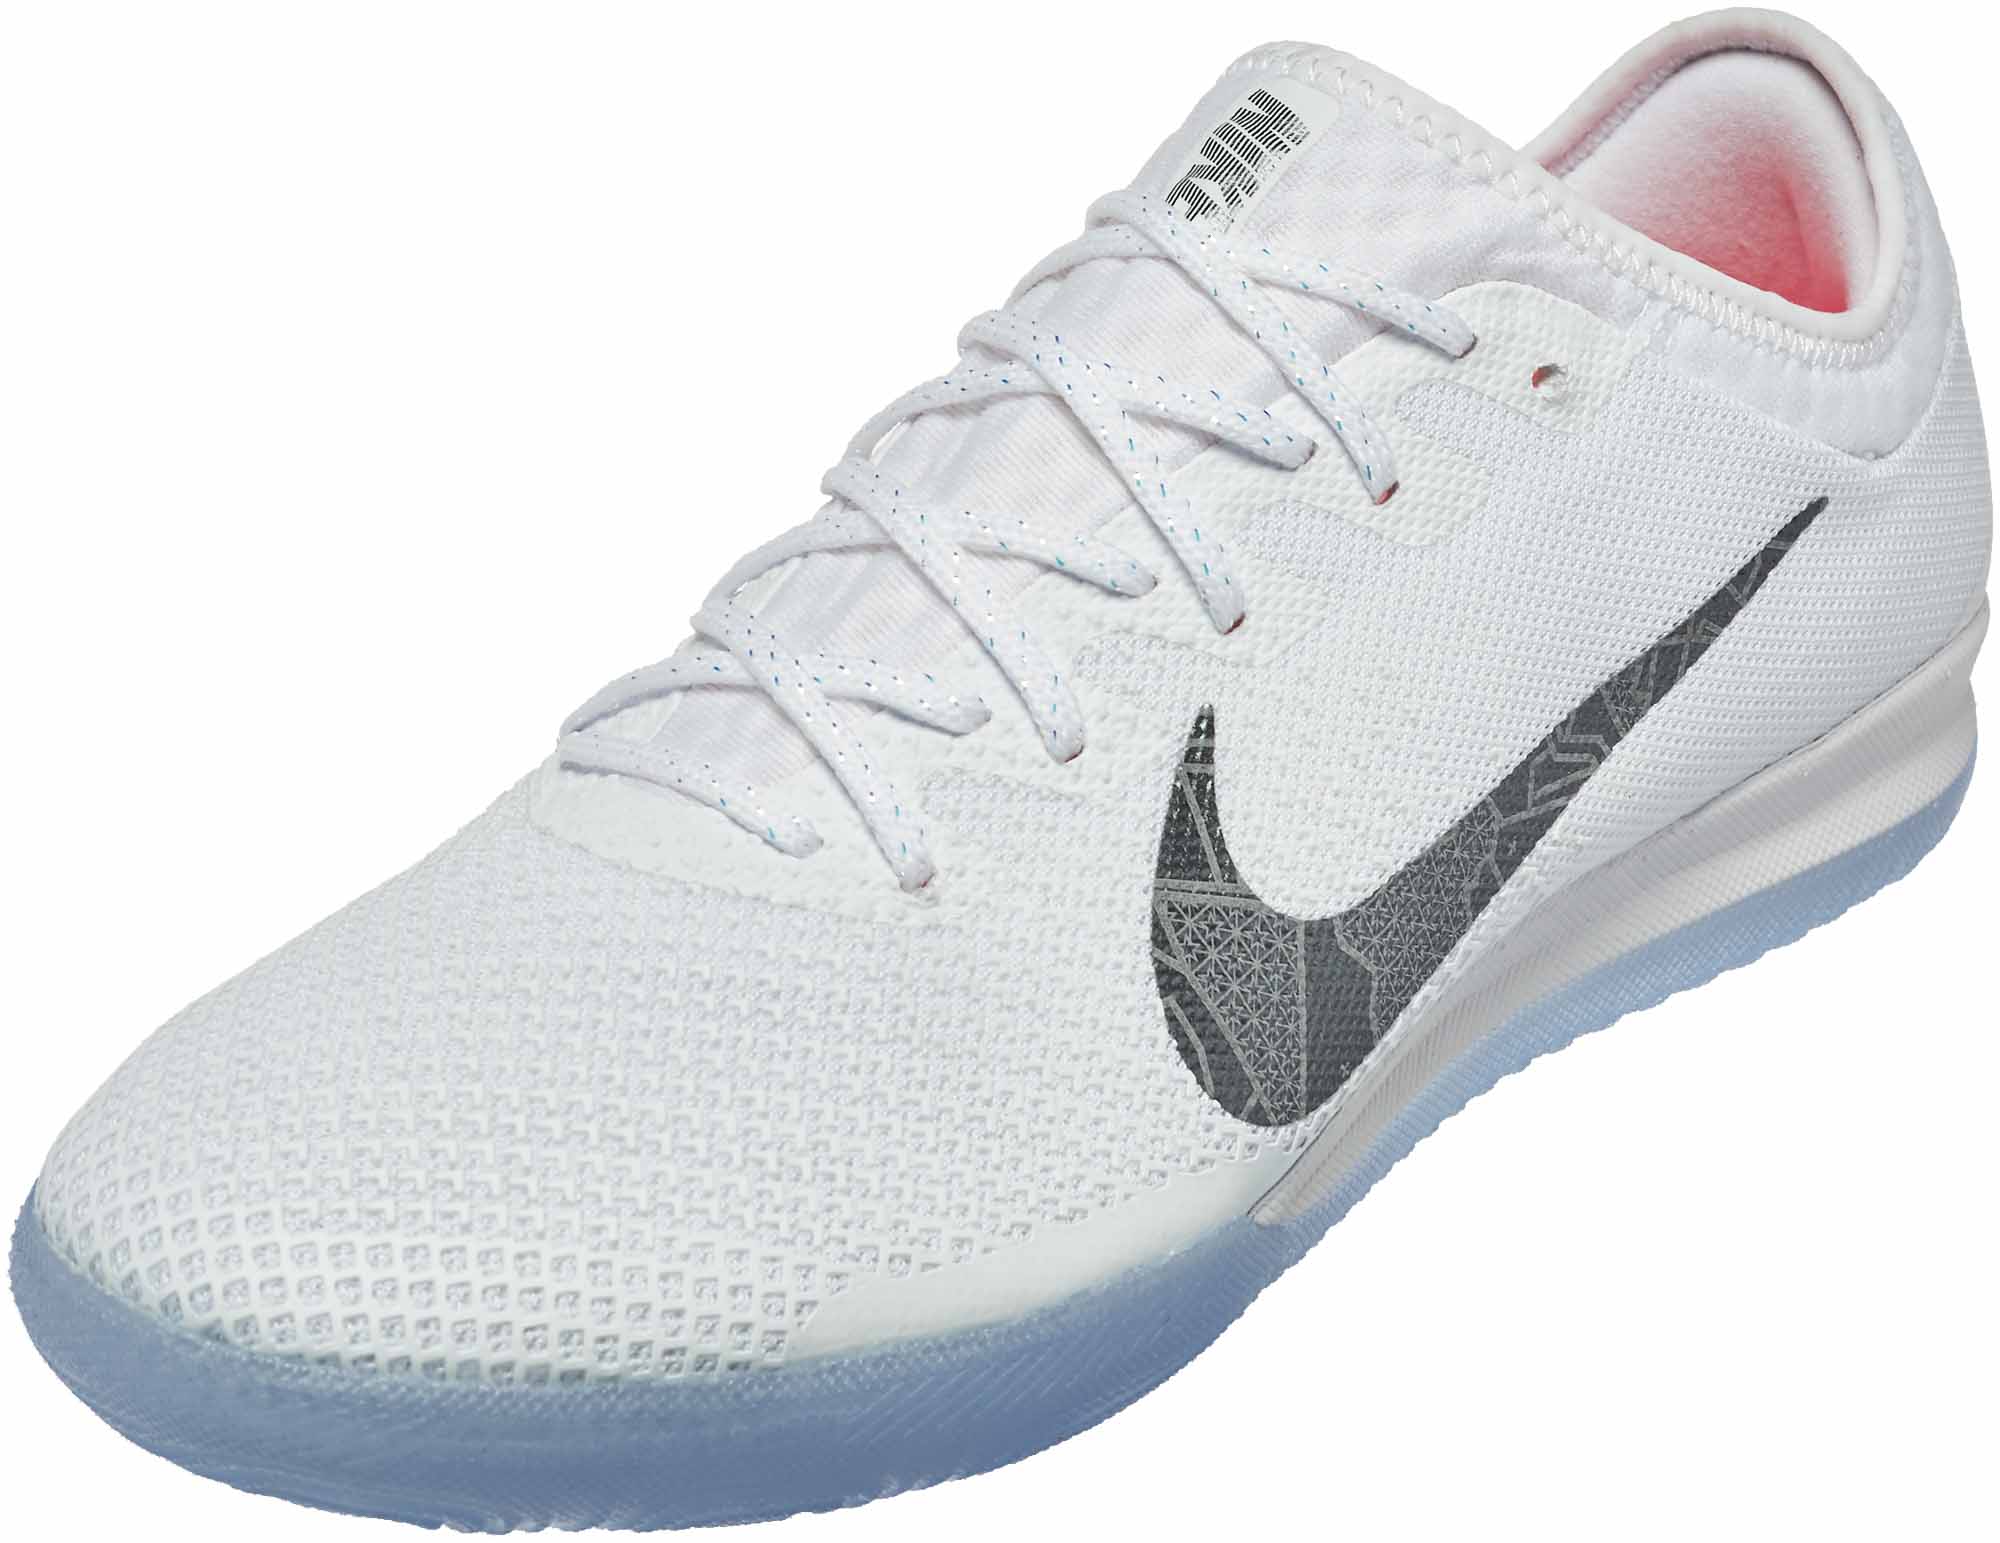 Nike VaporX 12 Pro IC - White/Metallic 